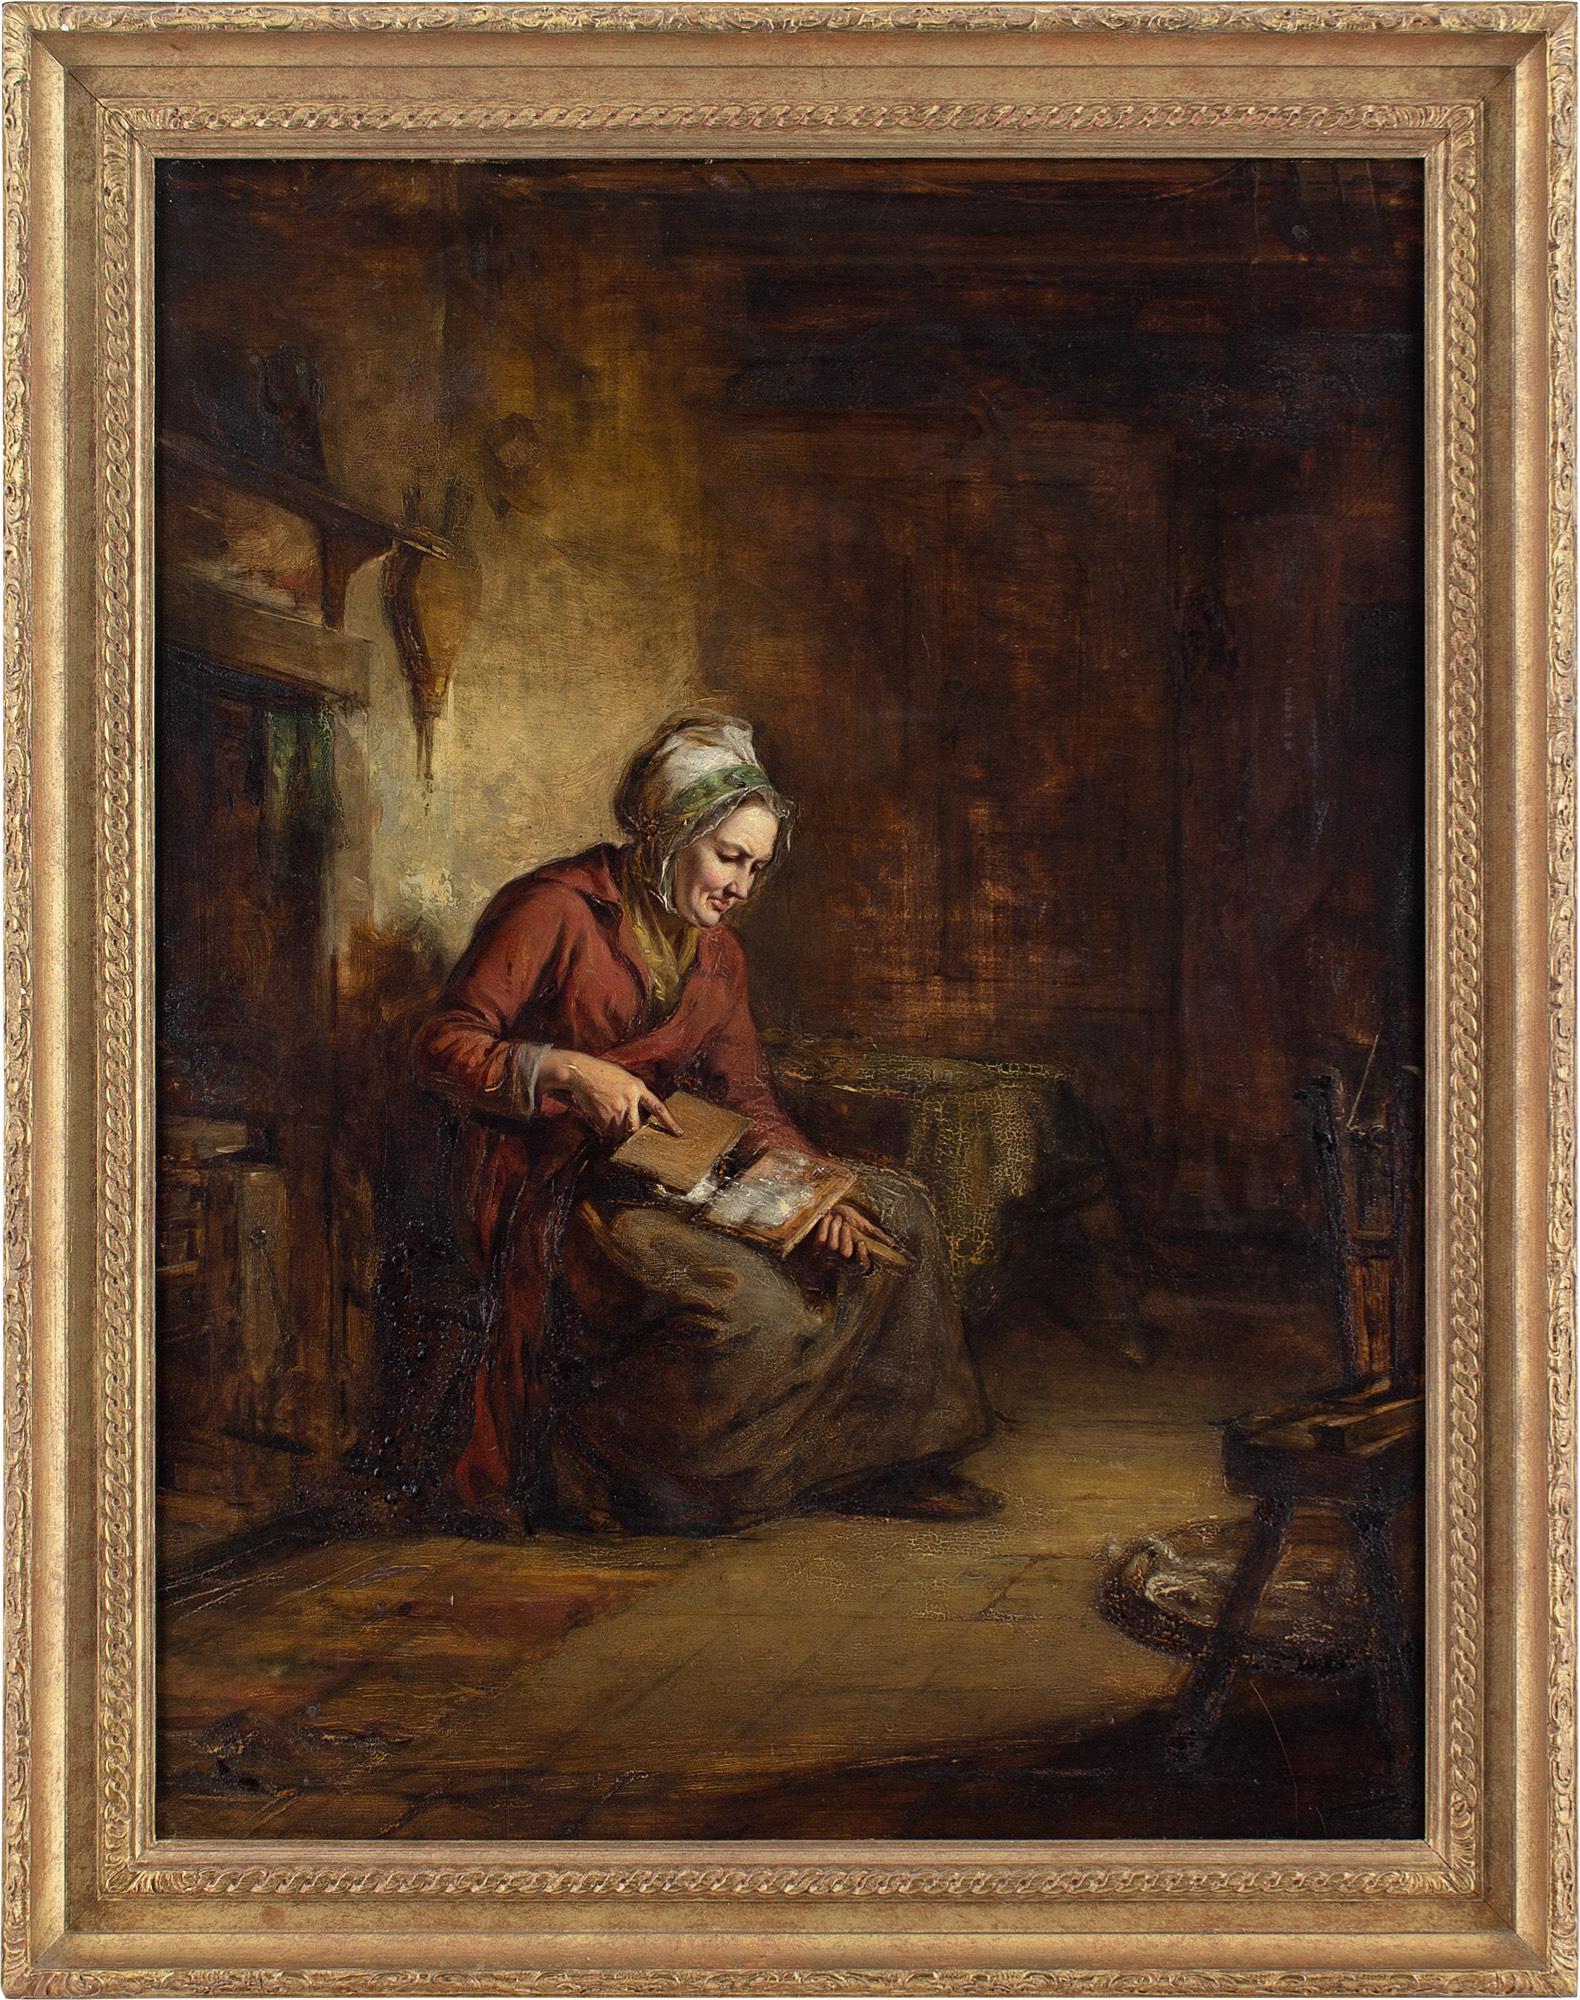 Dieses Ölgemälde des schottischen Künstlers Robert Thorburn Ross RSA (1816-1876) aus der Mitte des 19. Jahrhunderts zeigt eine sitzende Frau beim Kardieren von Wolle in einem rustikalen Interieur.

Robert Thorburn Ross RSA war ein bedeutender Maler